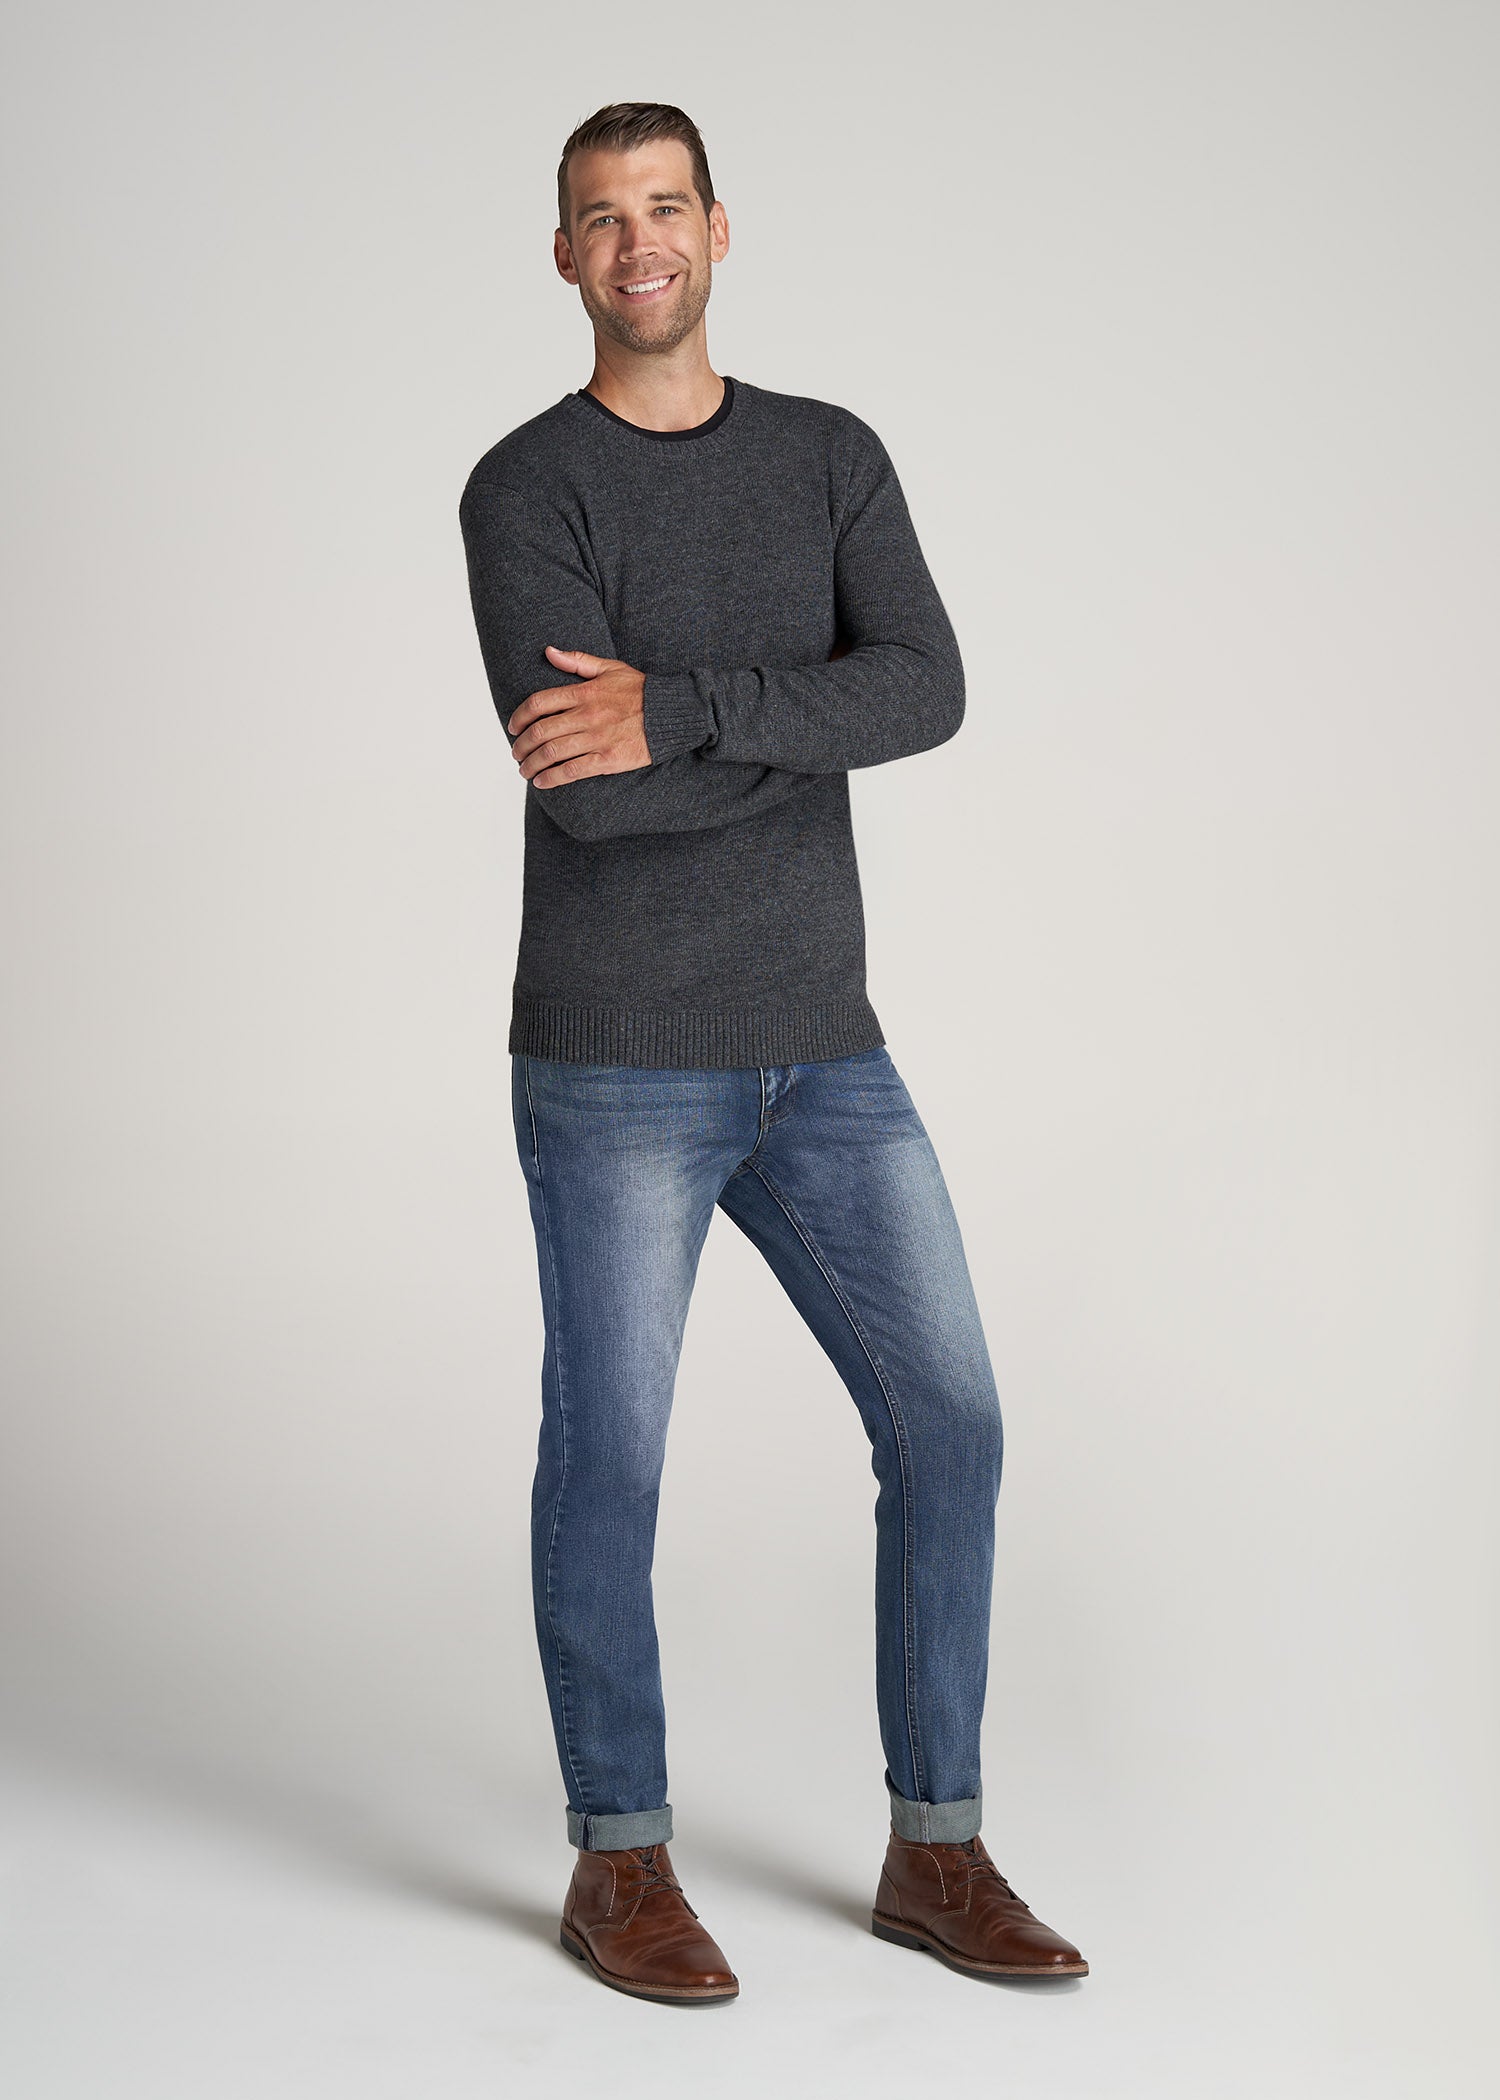 American-Tall-Men-LJ-Wool-Sweater-CharcoalMix-full